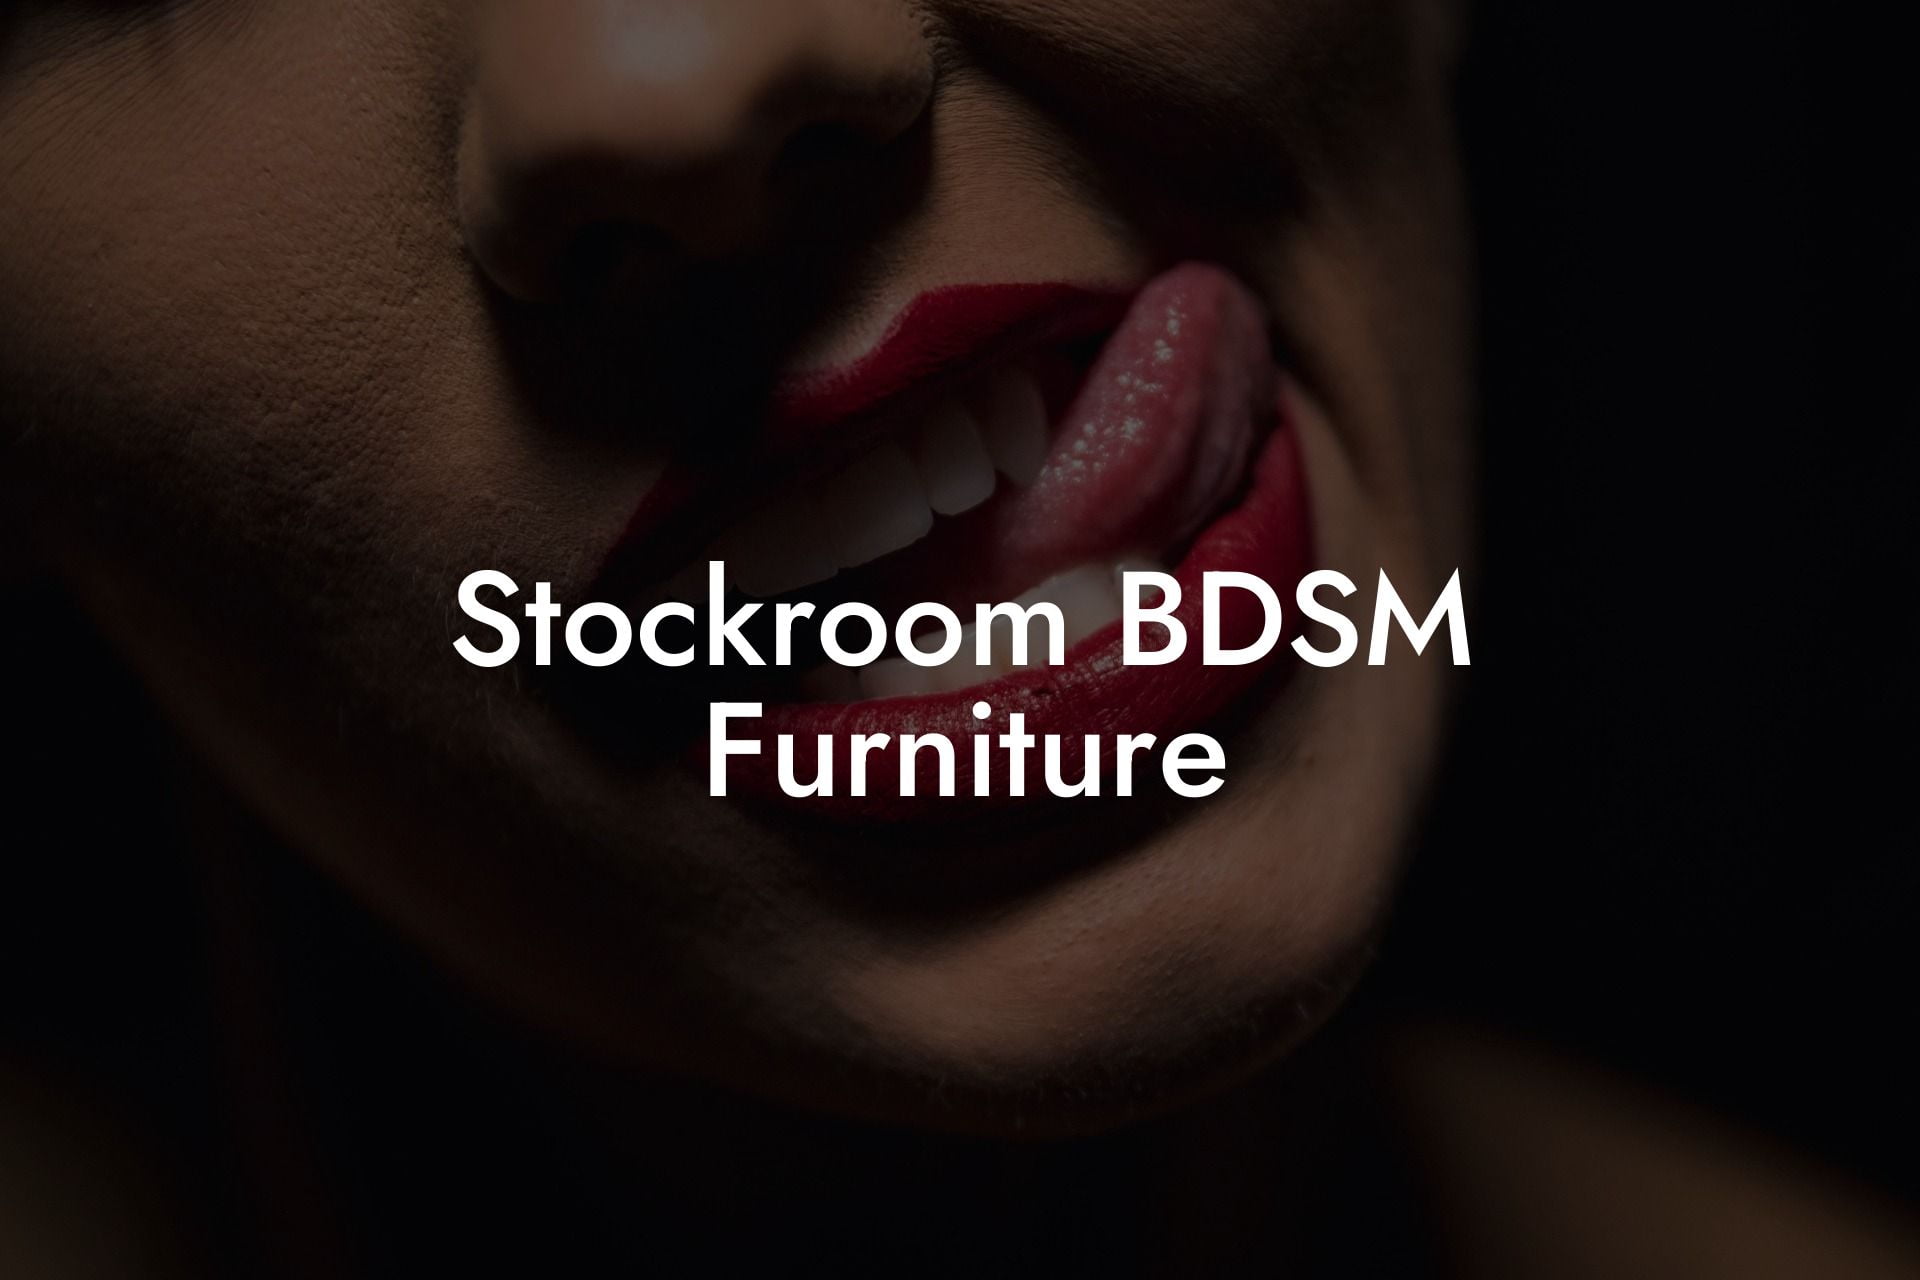 Stockroom BDSM Furniture